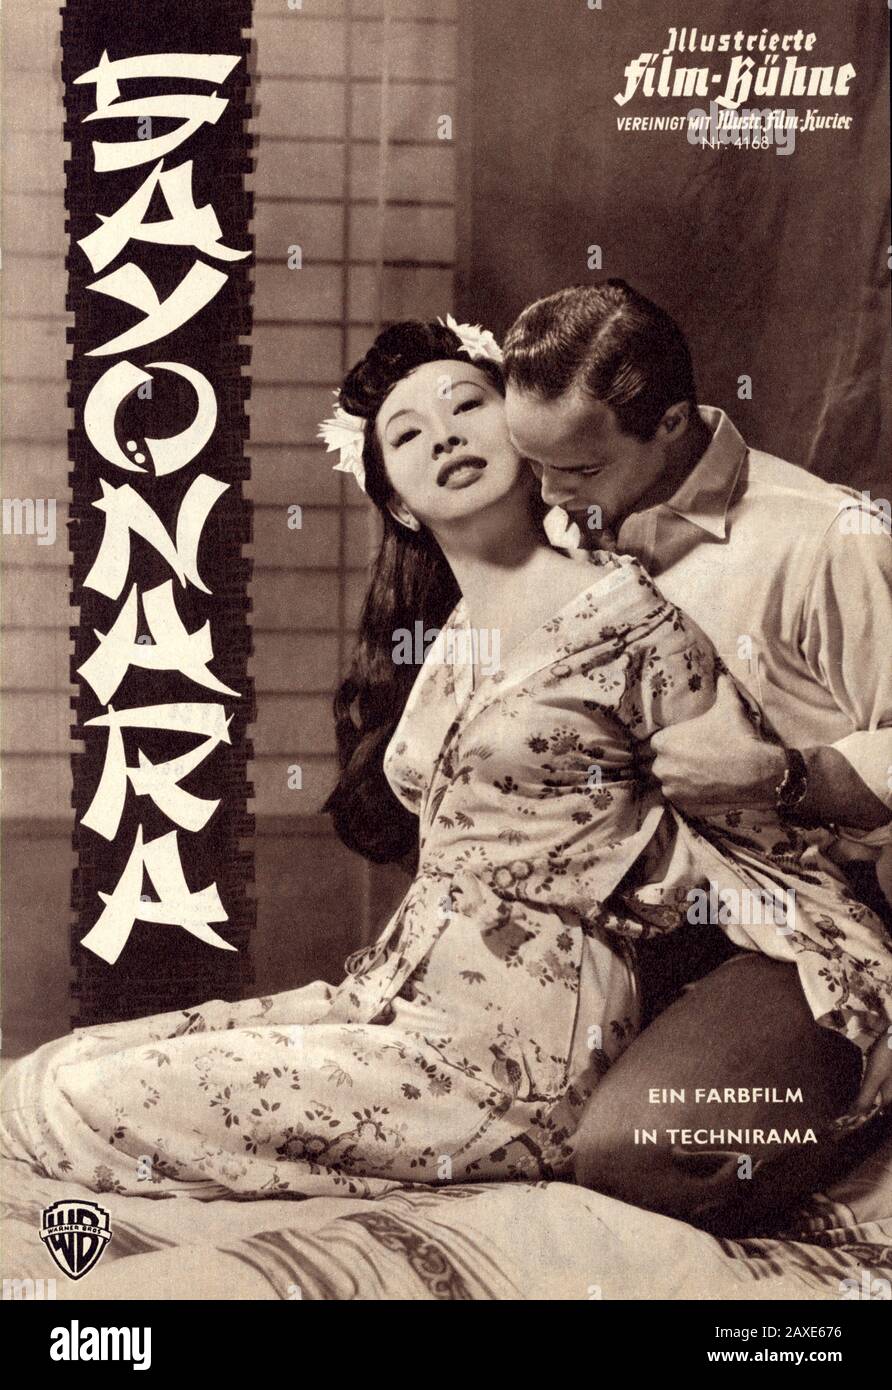 1957 :  The celebrated american movie actor MARLON BRANDO with MIIKO TAKA in SAYONARA by Joshua Logan , from a novel by James A. Michener . Cover of movie program ILLUSTRIERTE FILM-BUHNE , 1957 - ATTRICE - MOVIE - FILM - CINEMA - ASBURGO - ABSBURGO -  portrait - ritratto  - sorriso  - lovers - innamorati - amanti - love scene - amore - MOVIE - portrait - ritratto - CINEMA - FILM   - locandina pubblicitaria cinematografica - POSTER  - embrace - abbraccio - kiss - bacio - copertina - cover - smile - swatch - orologio da polso ----  Archivio GBB Stock Photo